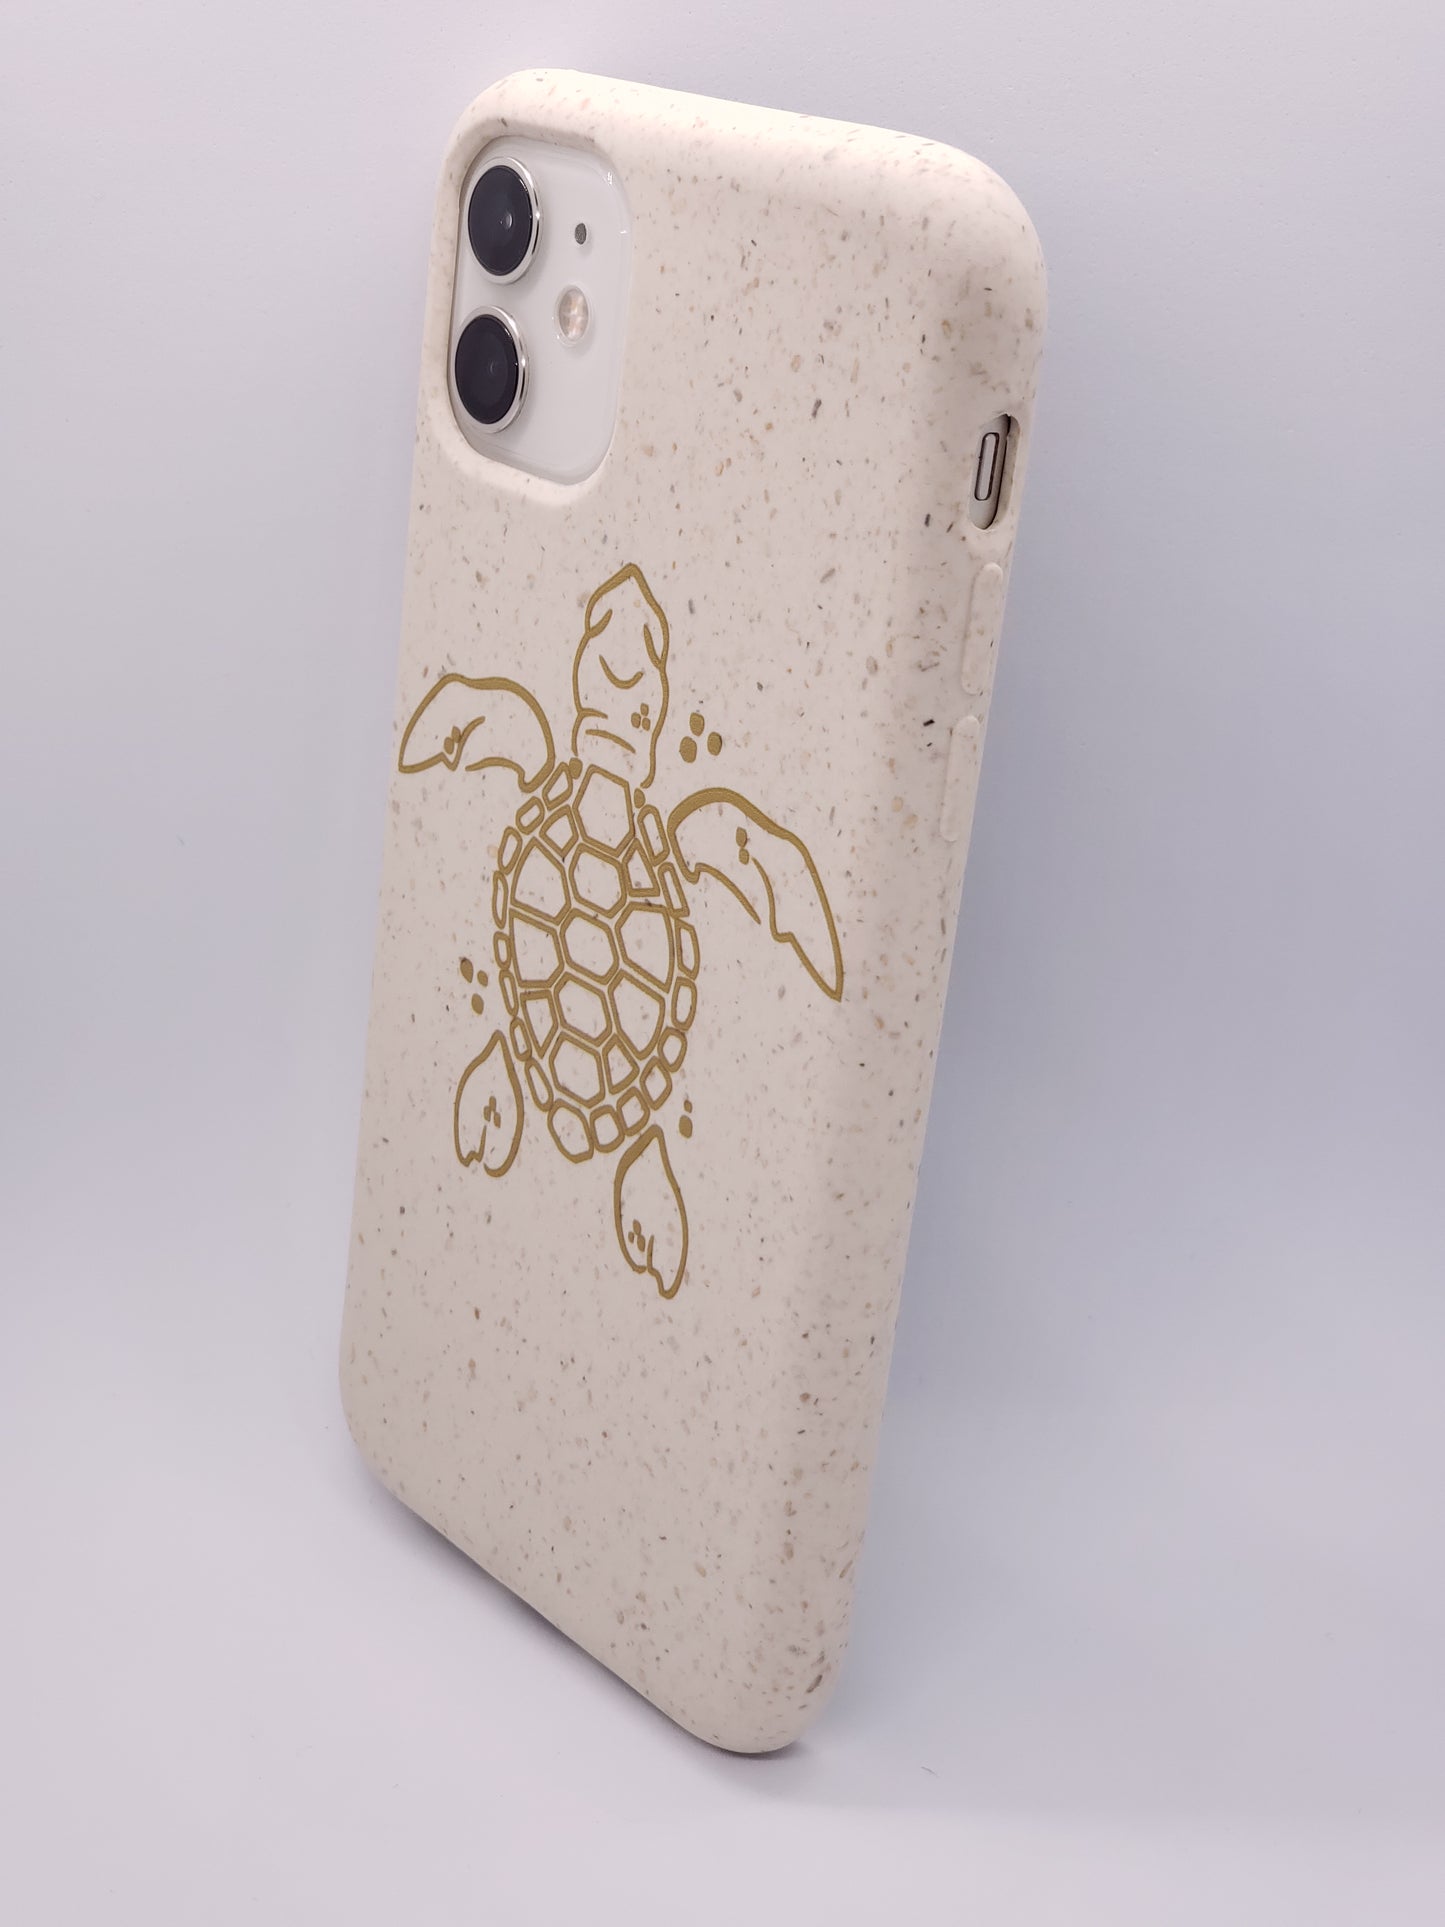 Coque iPhone compostable biodégradable tortue océanique